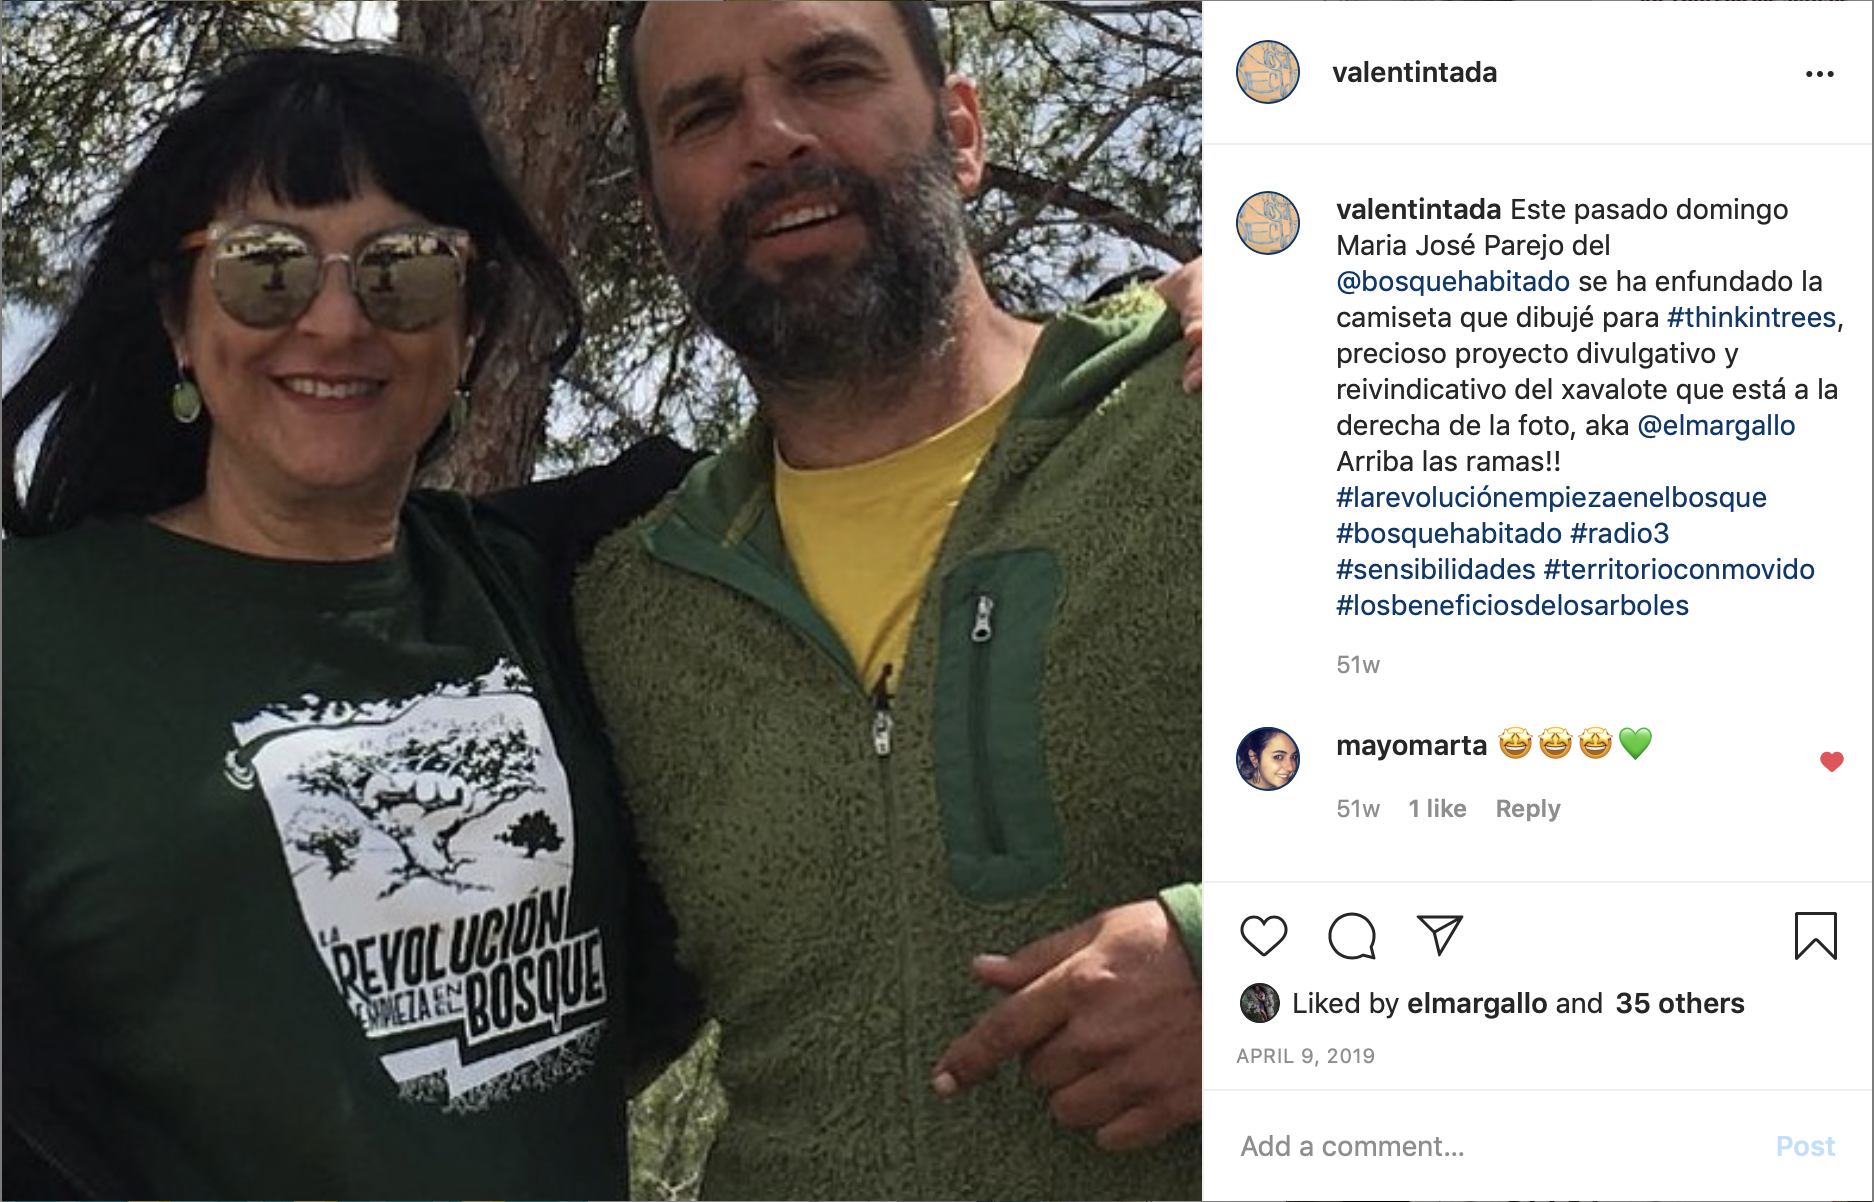 L'impulsor del projecte Think in trees, l'arborista Àlex Cuadrado, amb la Mª José Parejo, presentadora del programa "El bosque habitado" de Radio3, lluint la samarreta de "La revolución empieza en el bosque"